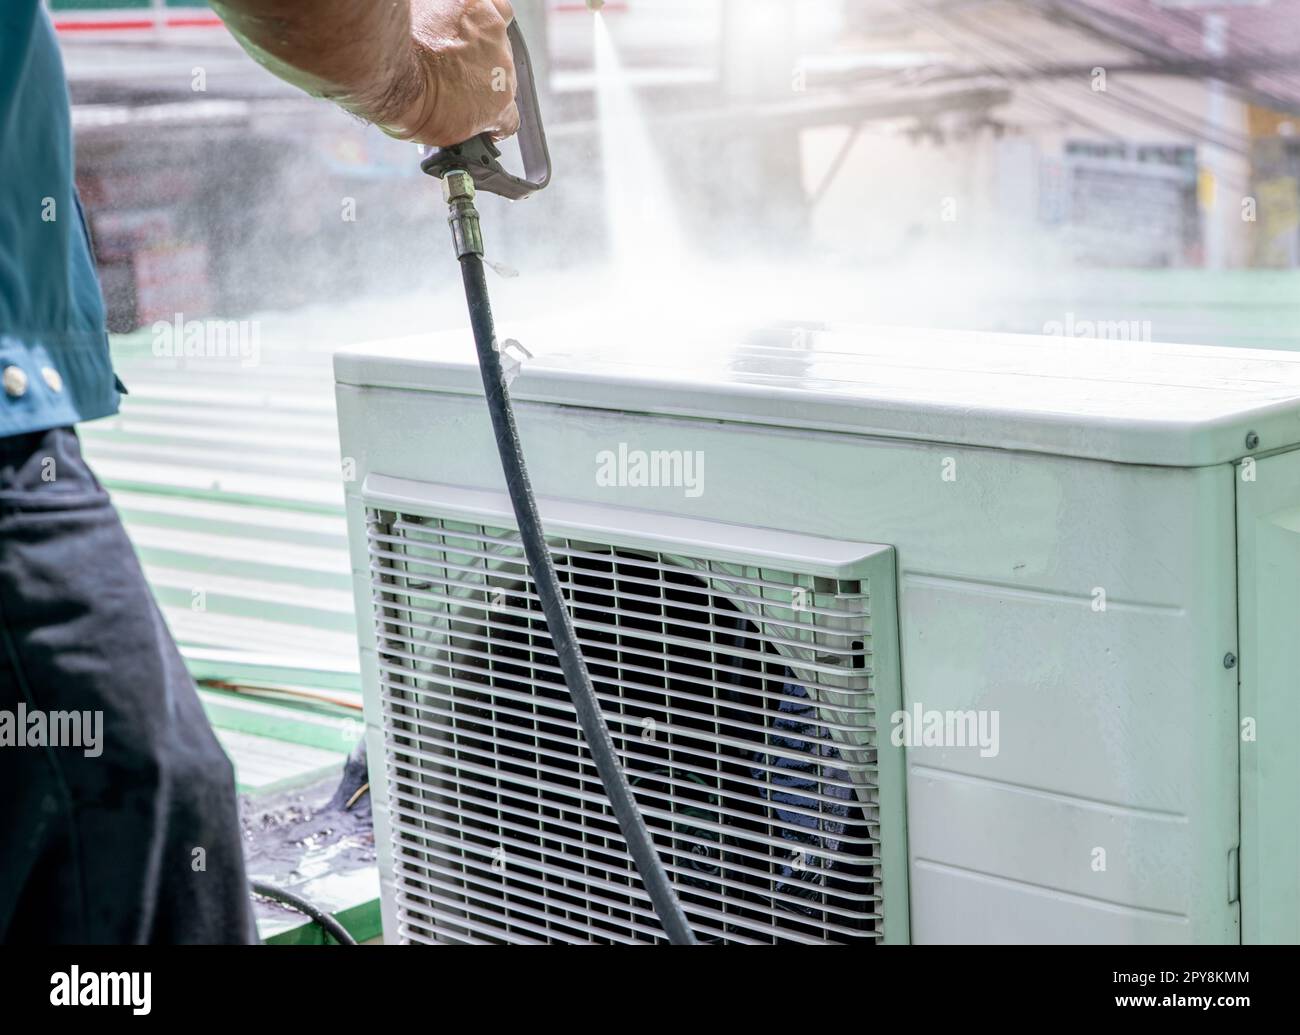 Nettoyage de climatiseur par un homme. Le technicien nettoie l'unité de condensation du climatiseur en pulvérisant de l'eau. Service d'entretien de climatiseur à la maison ou au bureau. Travailleur travaillant pour la maintenance ac. Banque D'Images